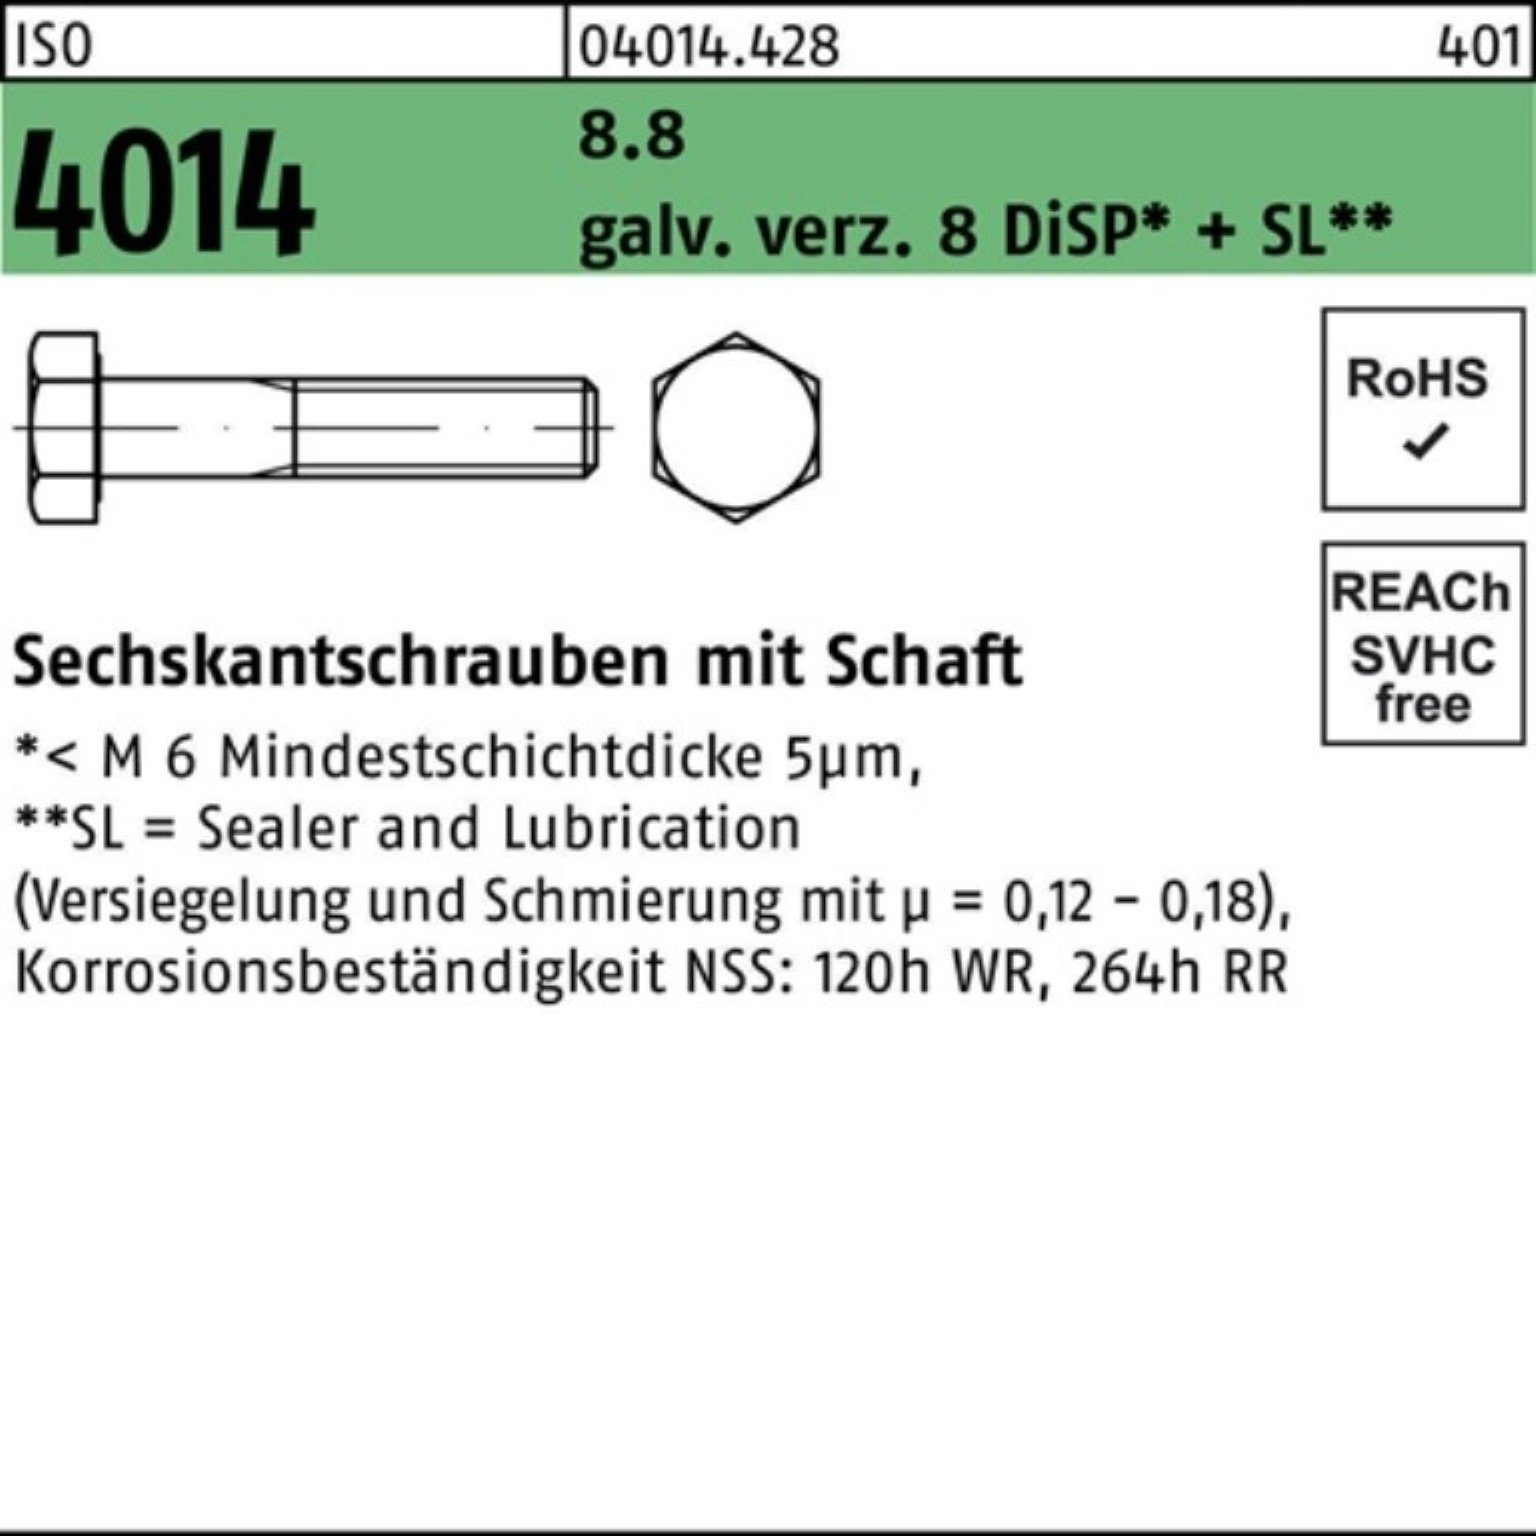 Bufab Sechskantschraube 100er Pack Sechskantschraube ISO 4014 Schaft M10x200 8.8 galv.verz. 8